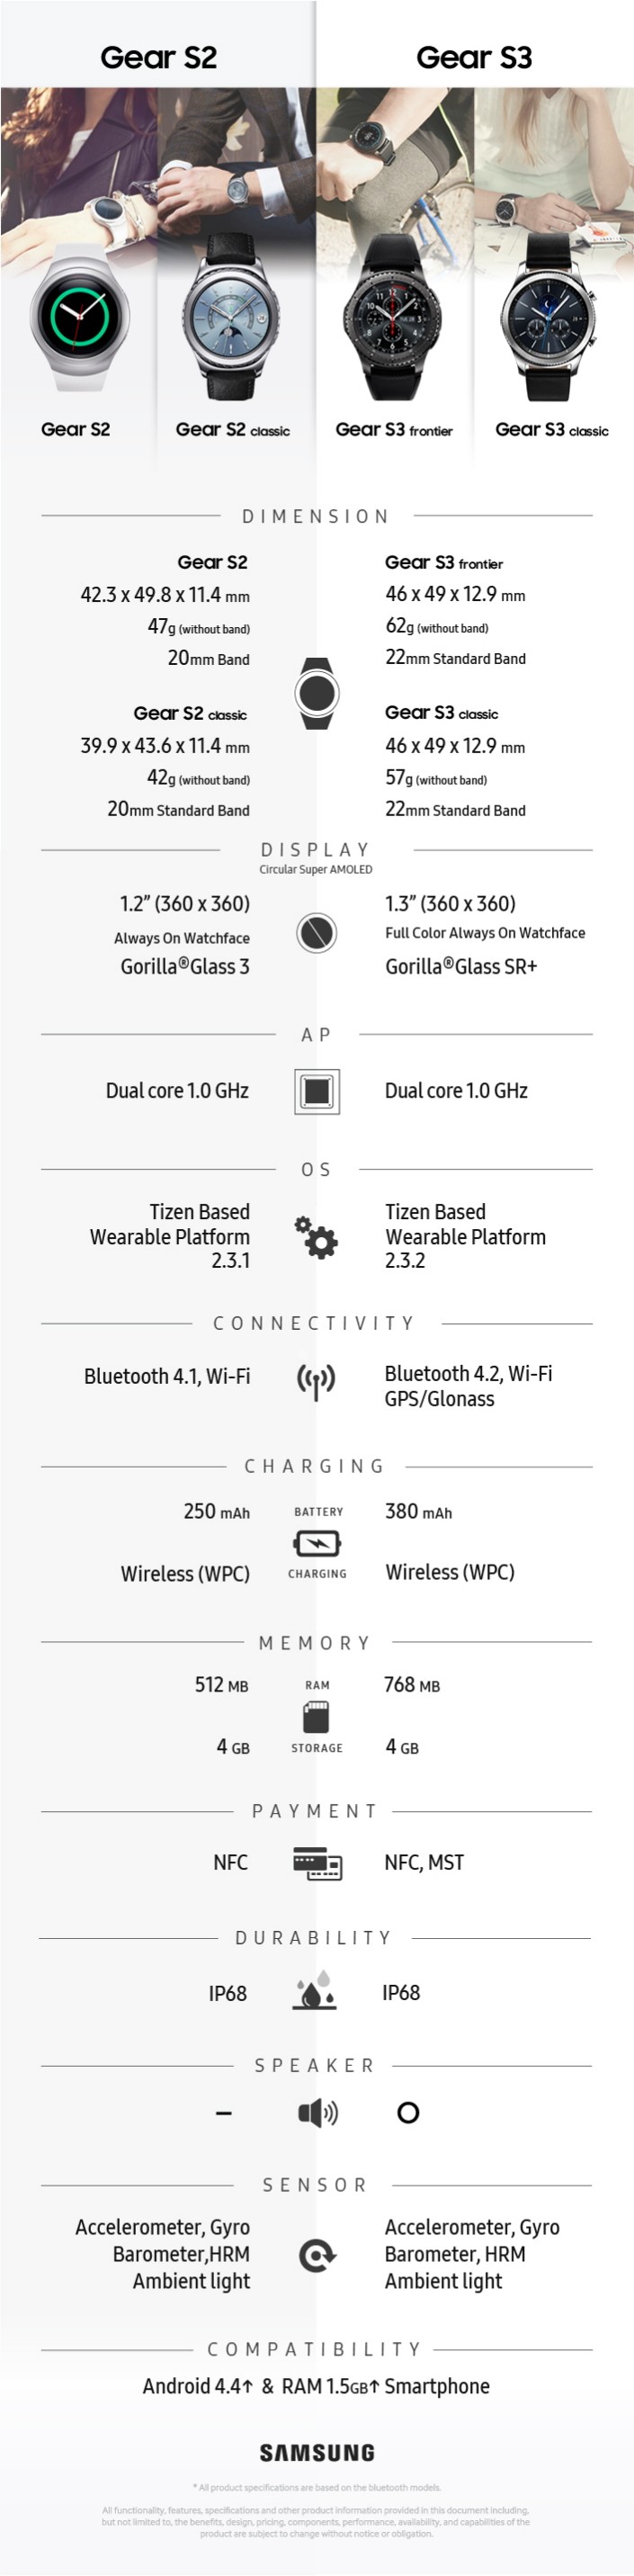 Samsung Gear S3 ve Gear S2 arasındaki farklar!